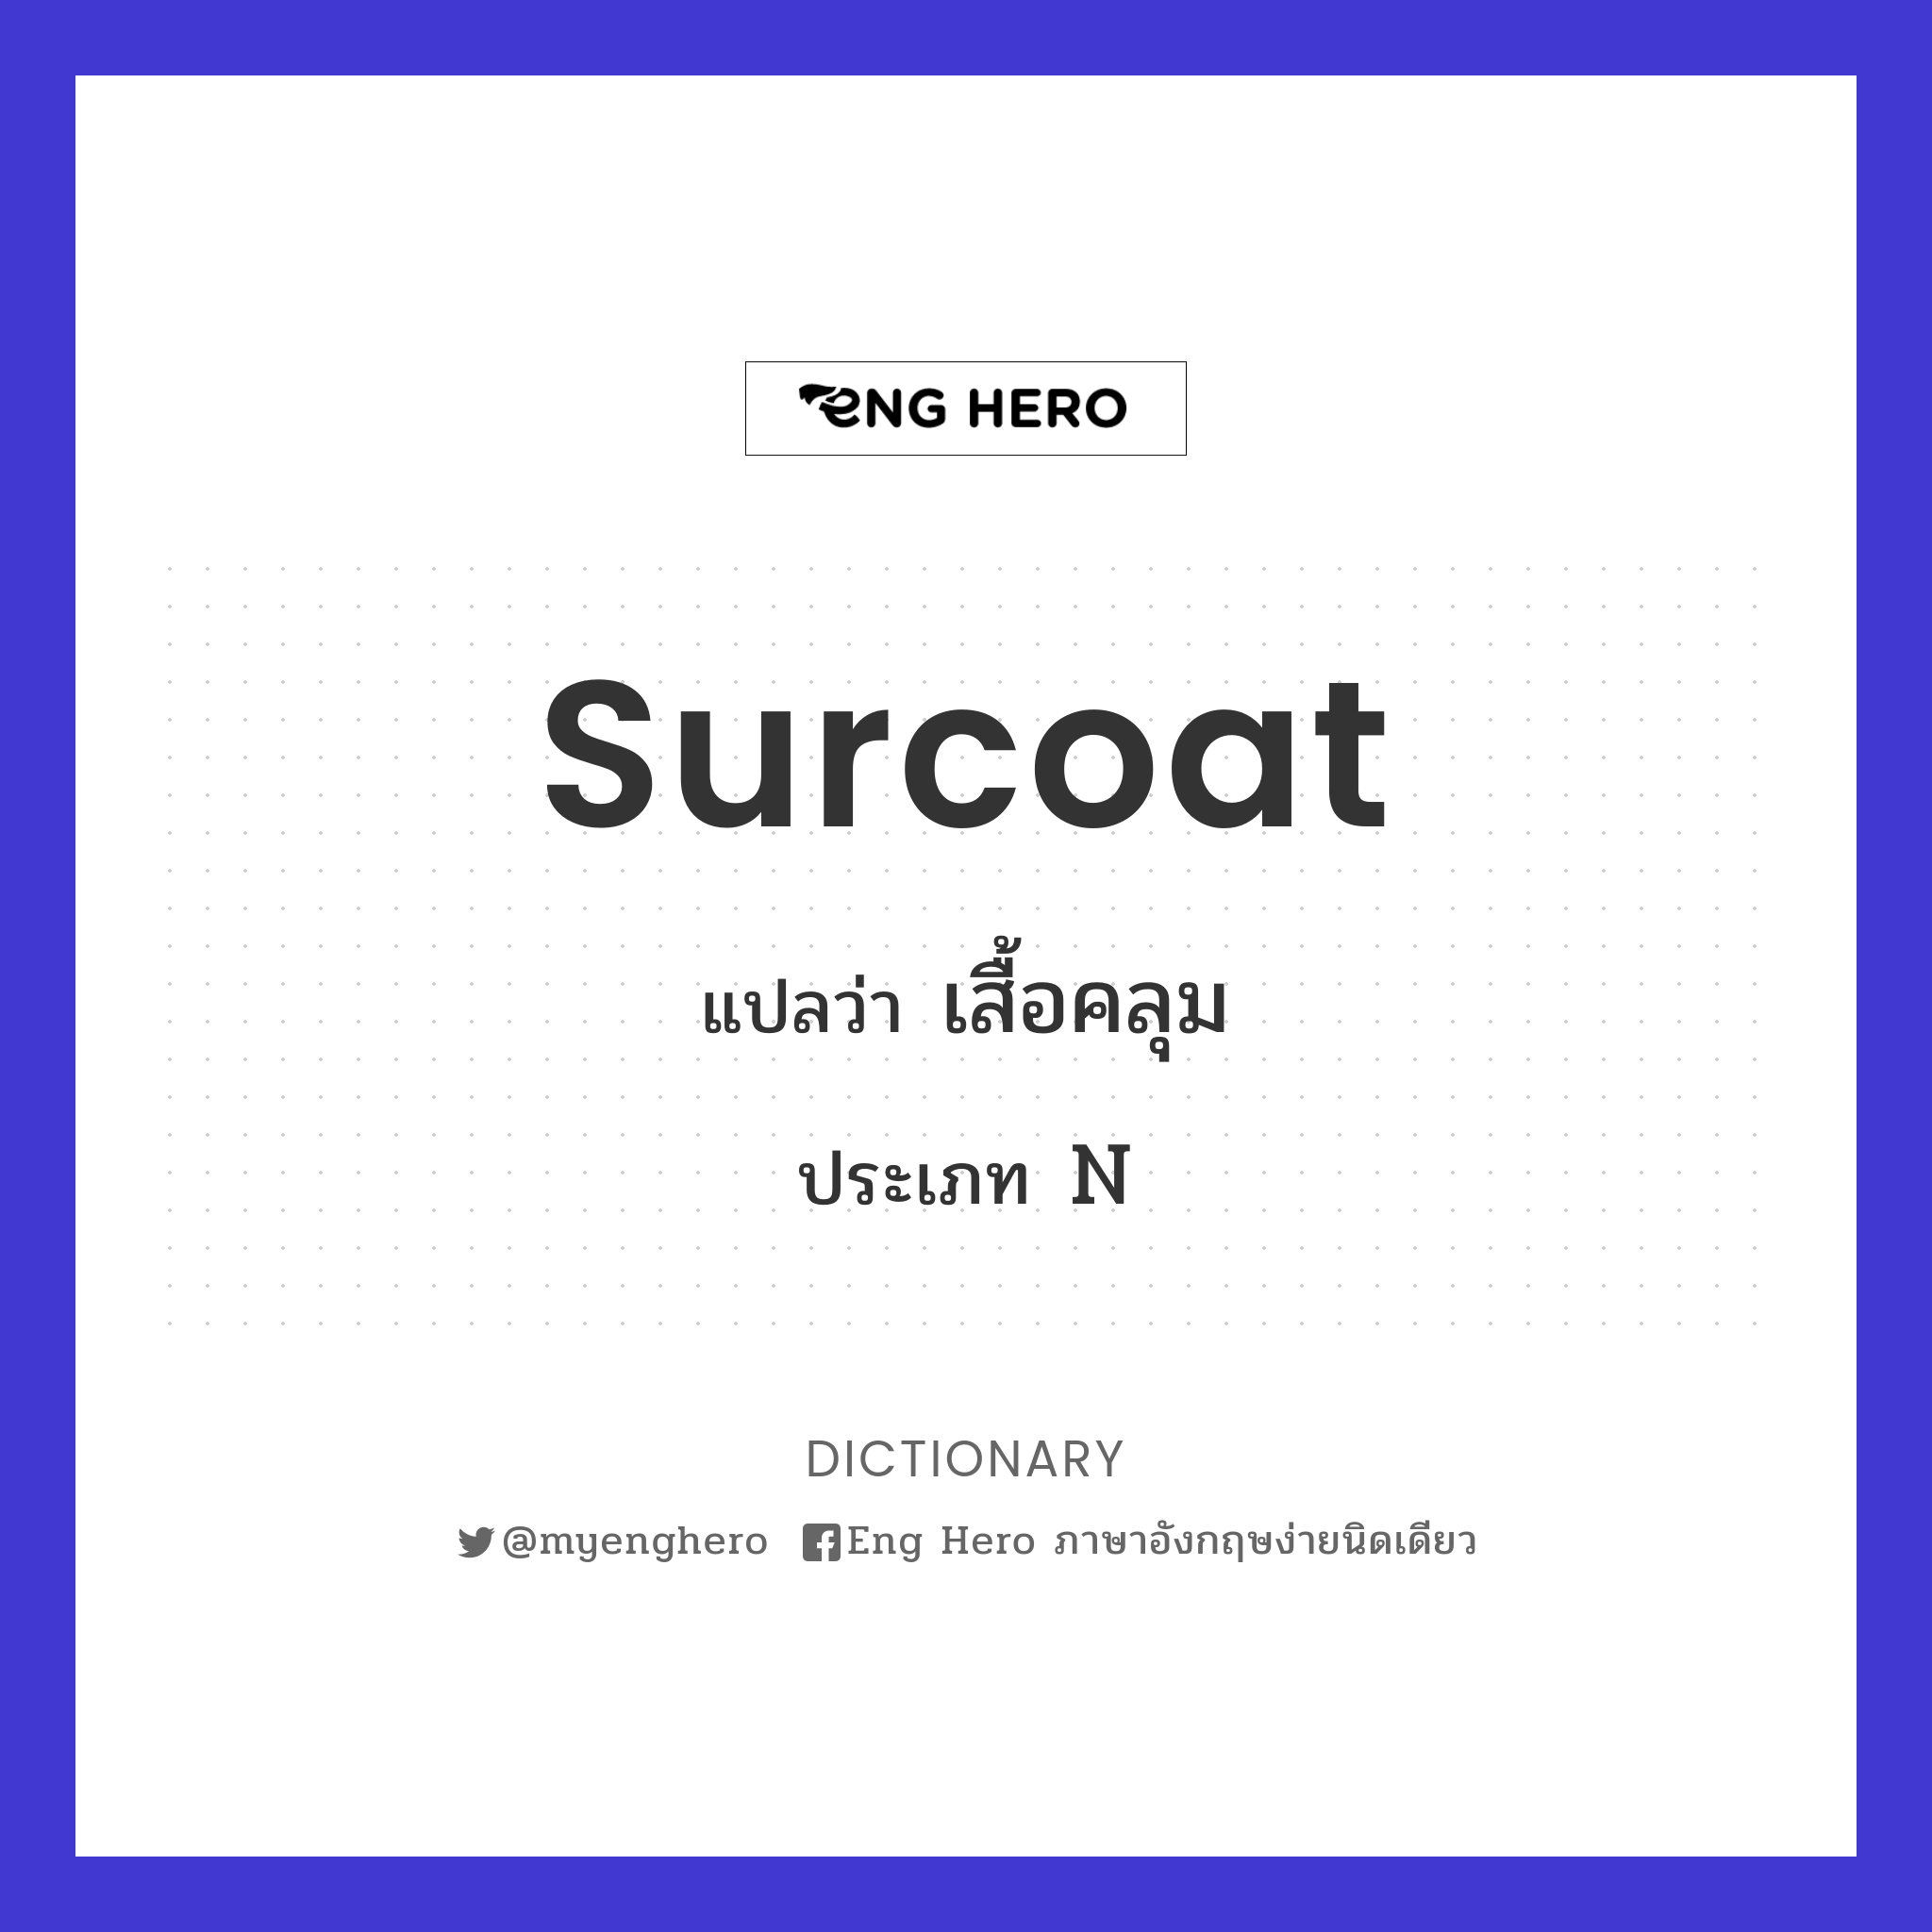 surcoat